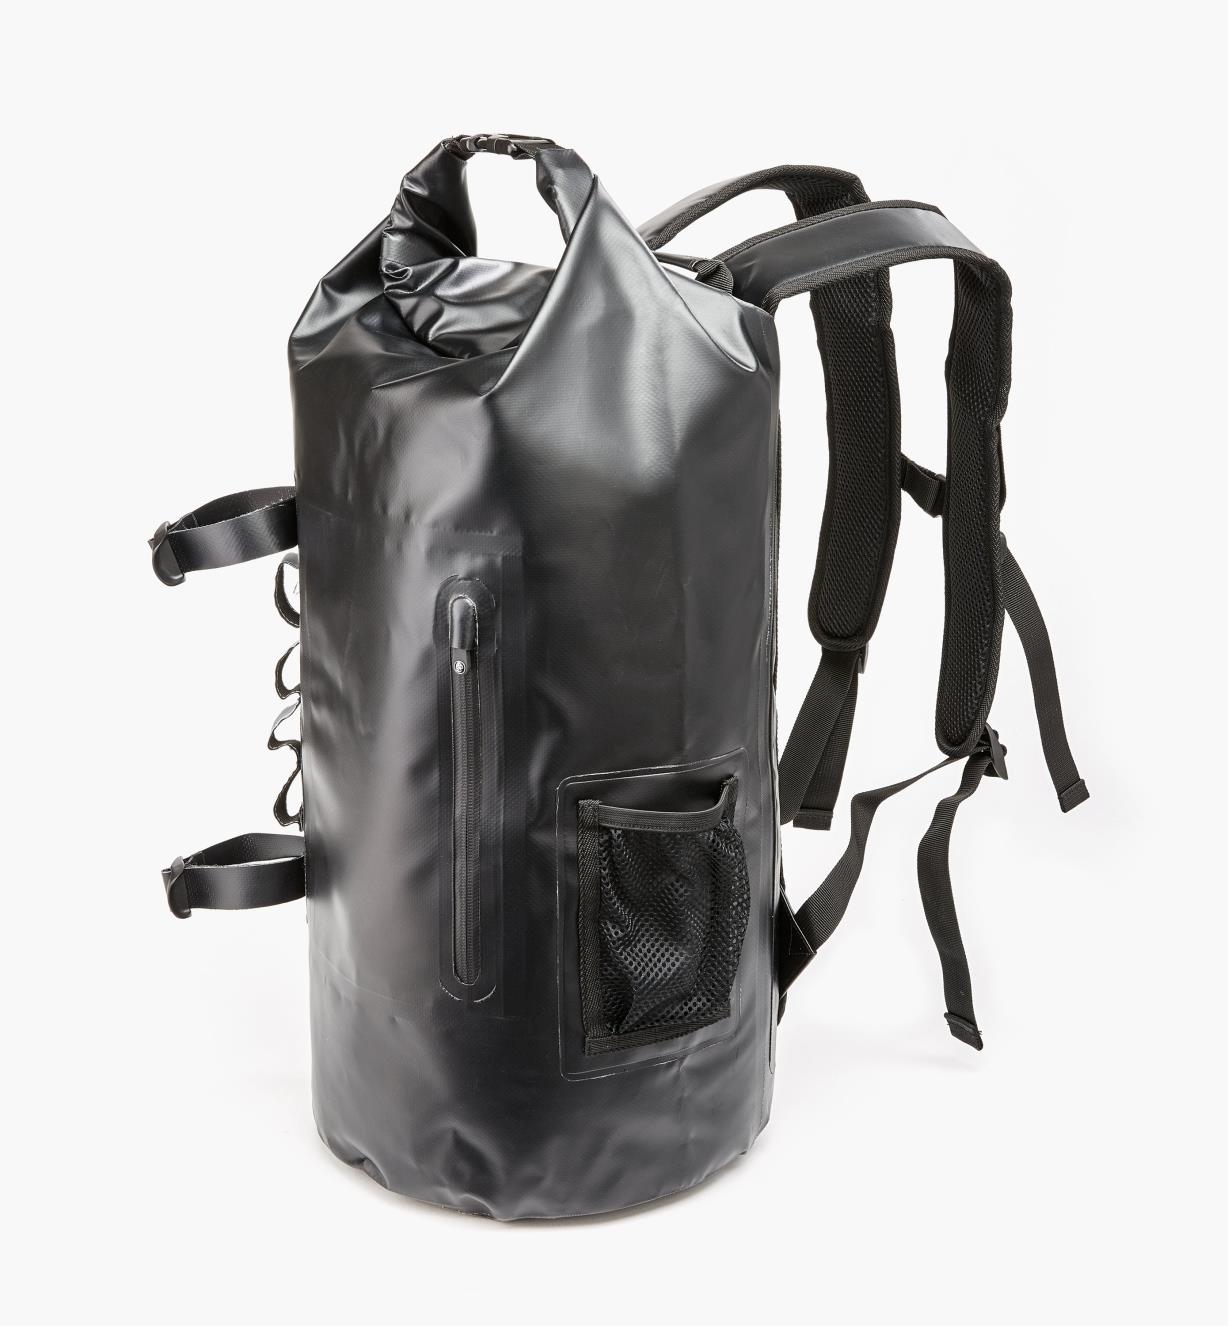 waterproof dry backpack